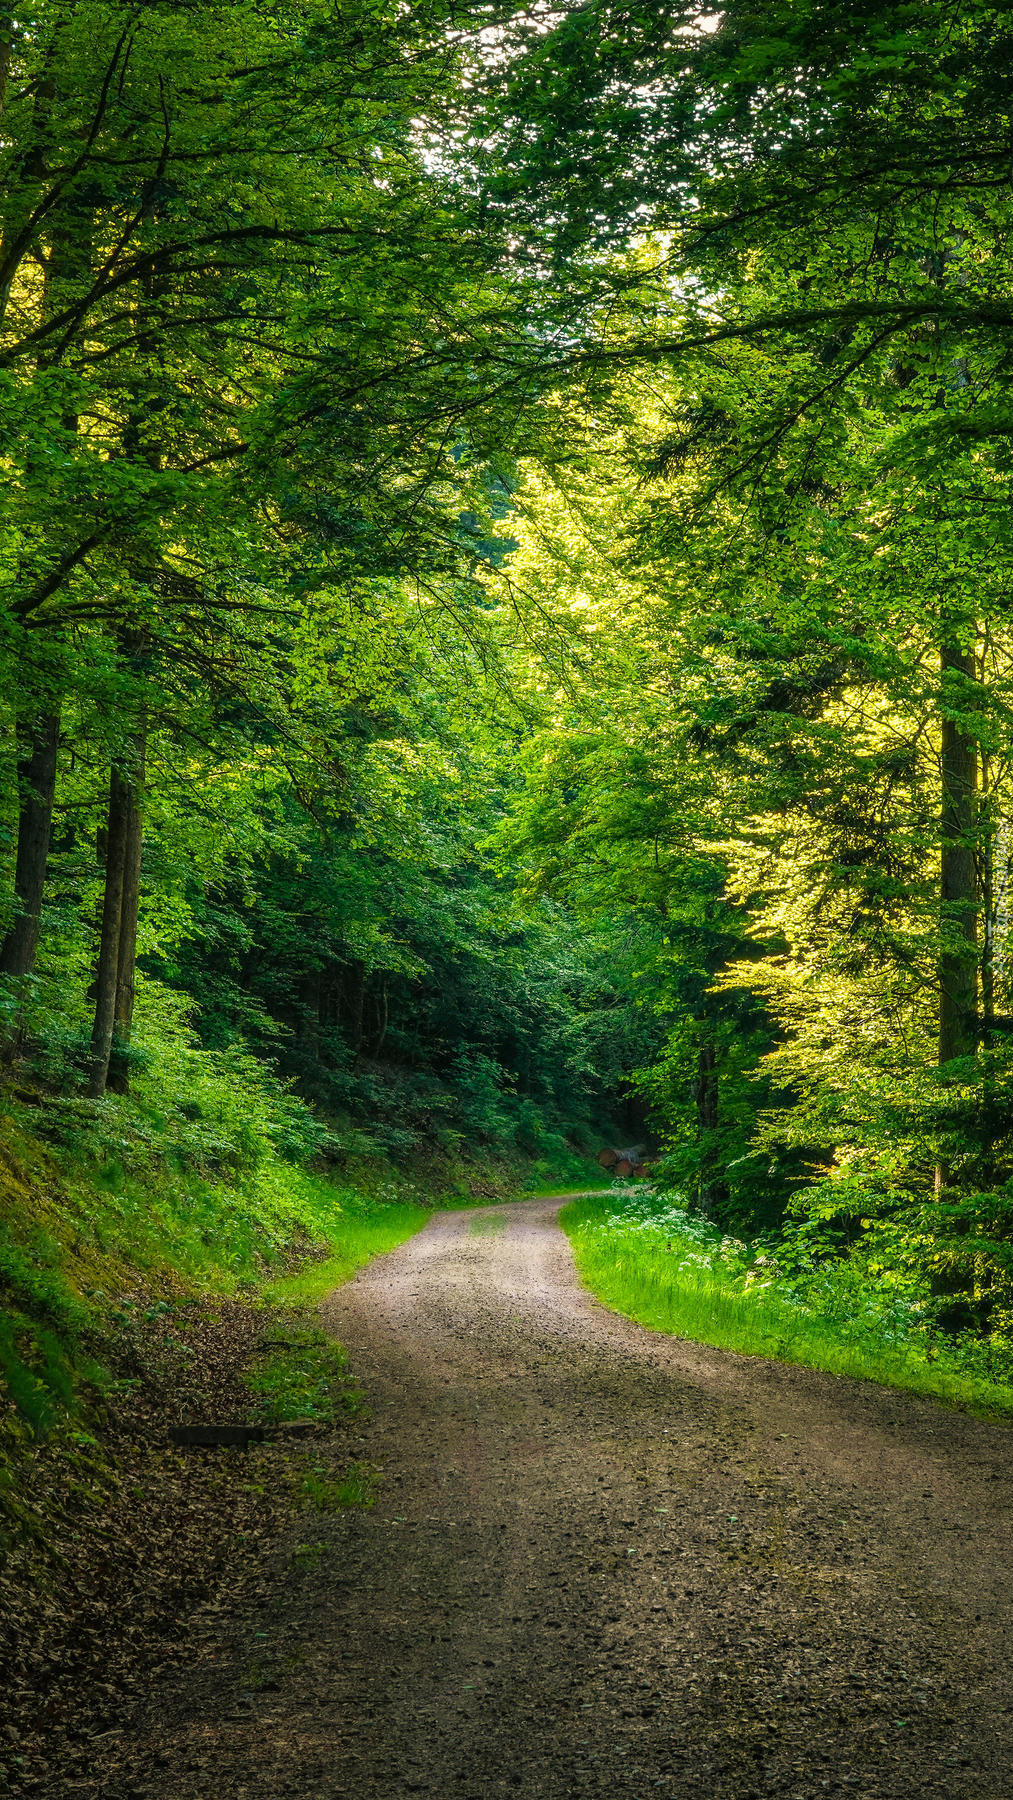 Leśna droga pośród zielonych drzew